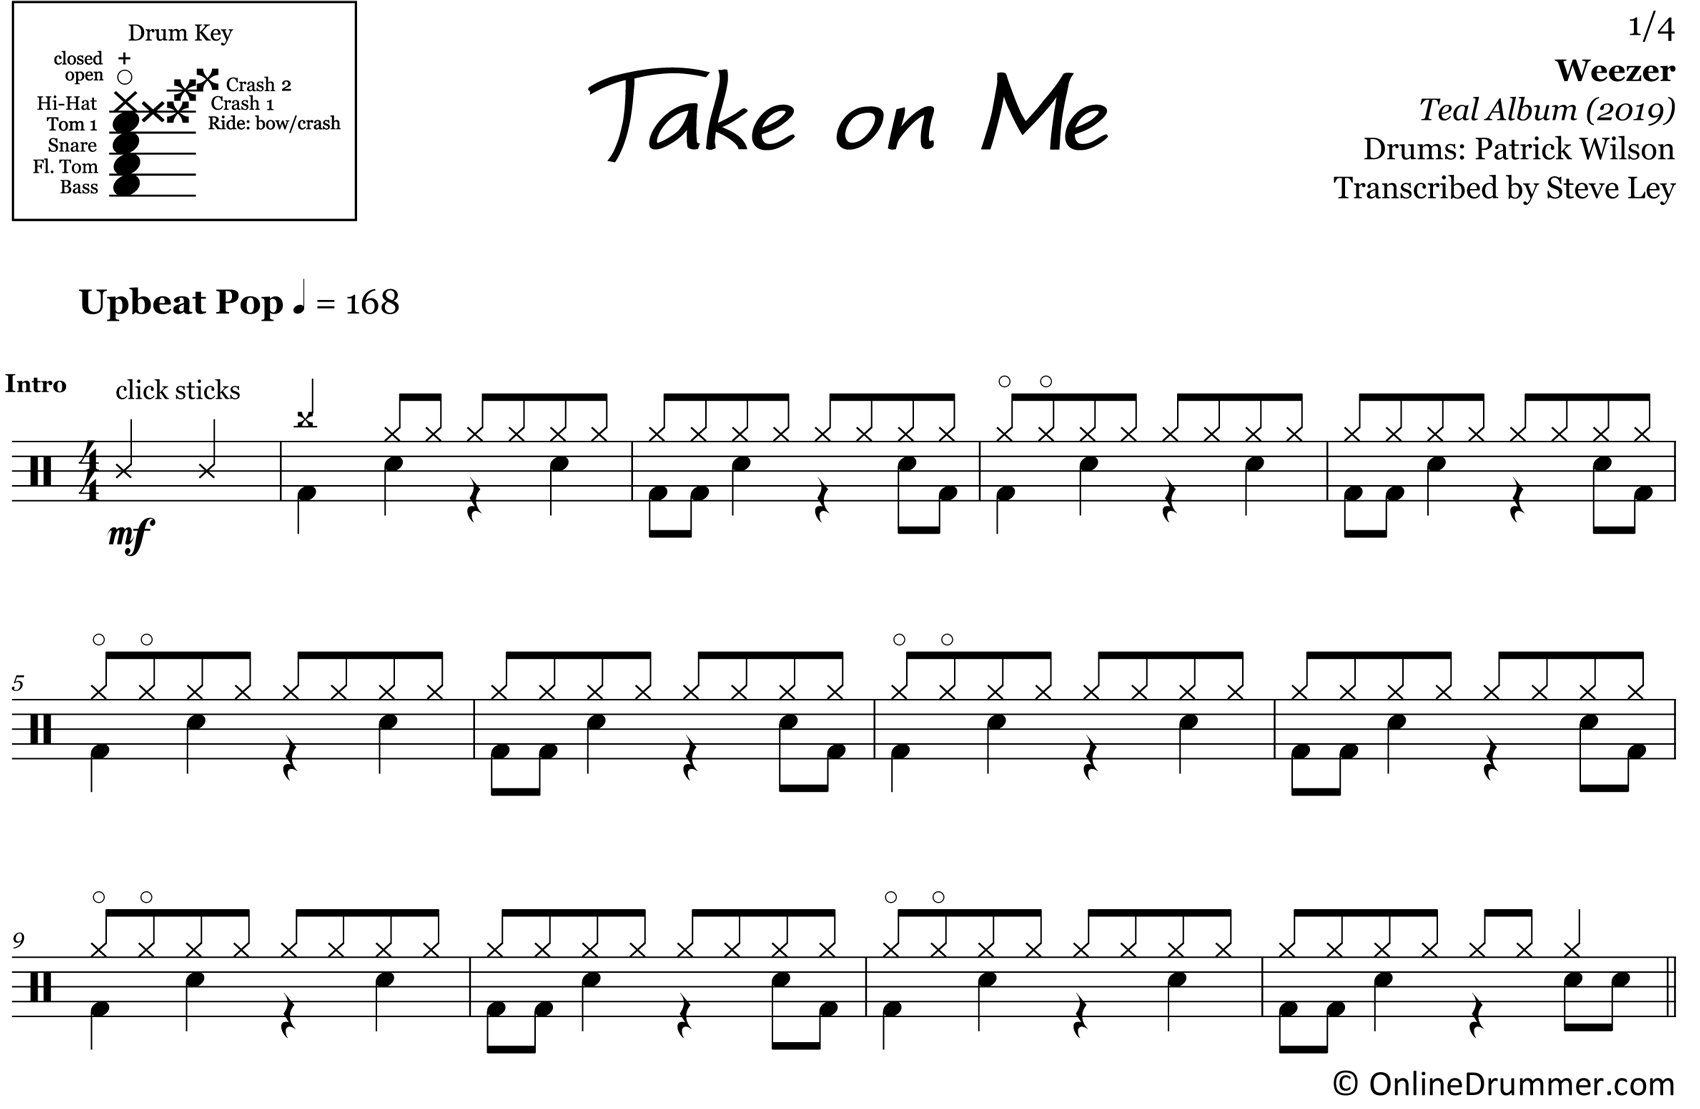 Take on Me - Weezer - Drum Sheet Music